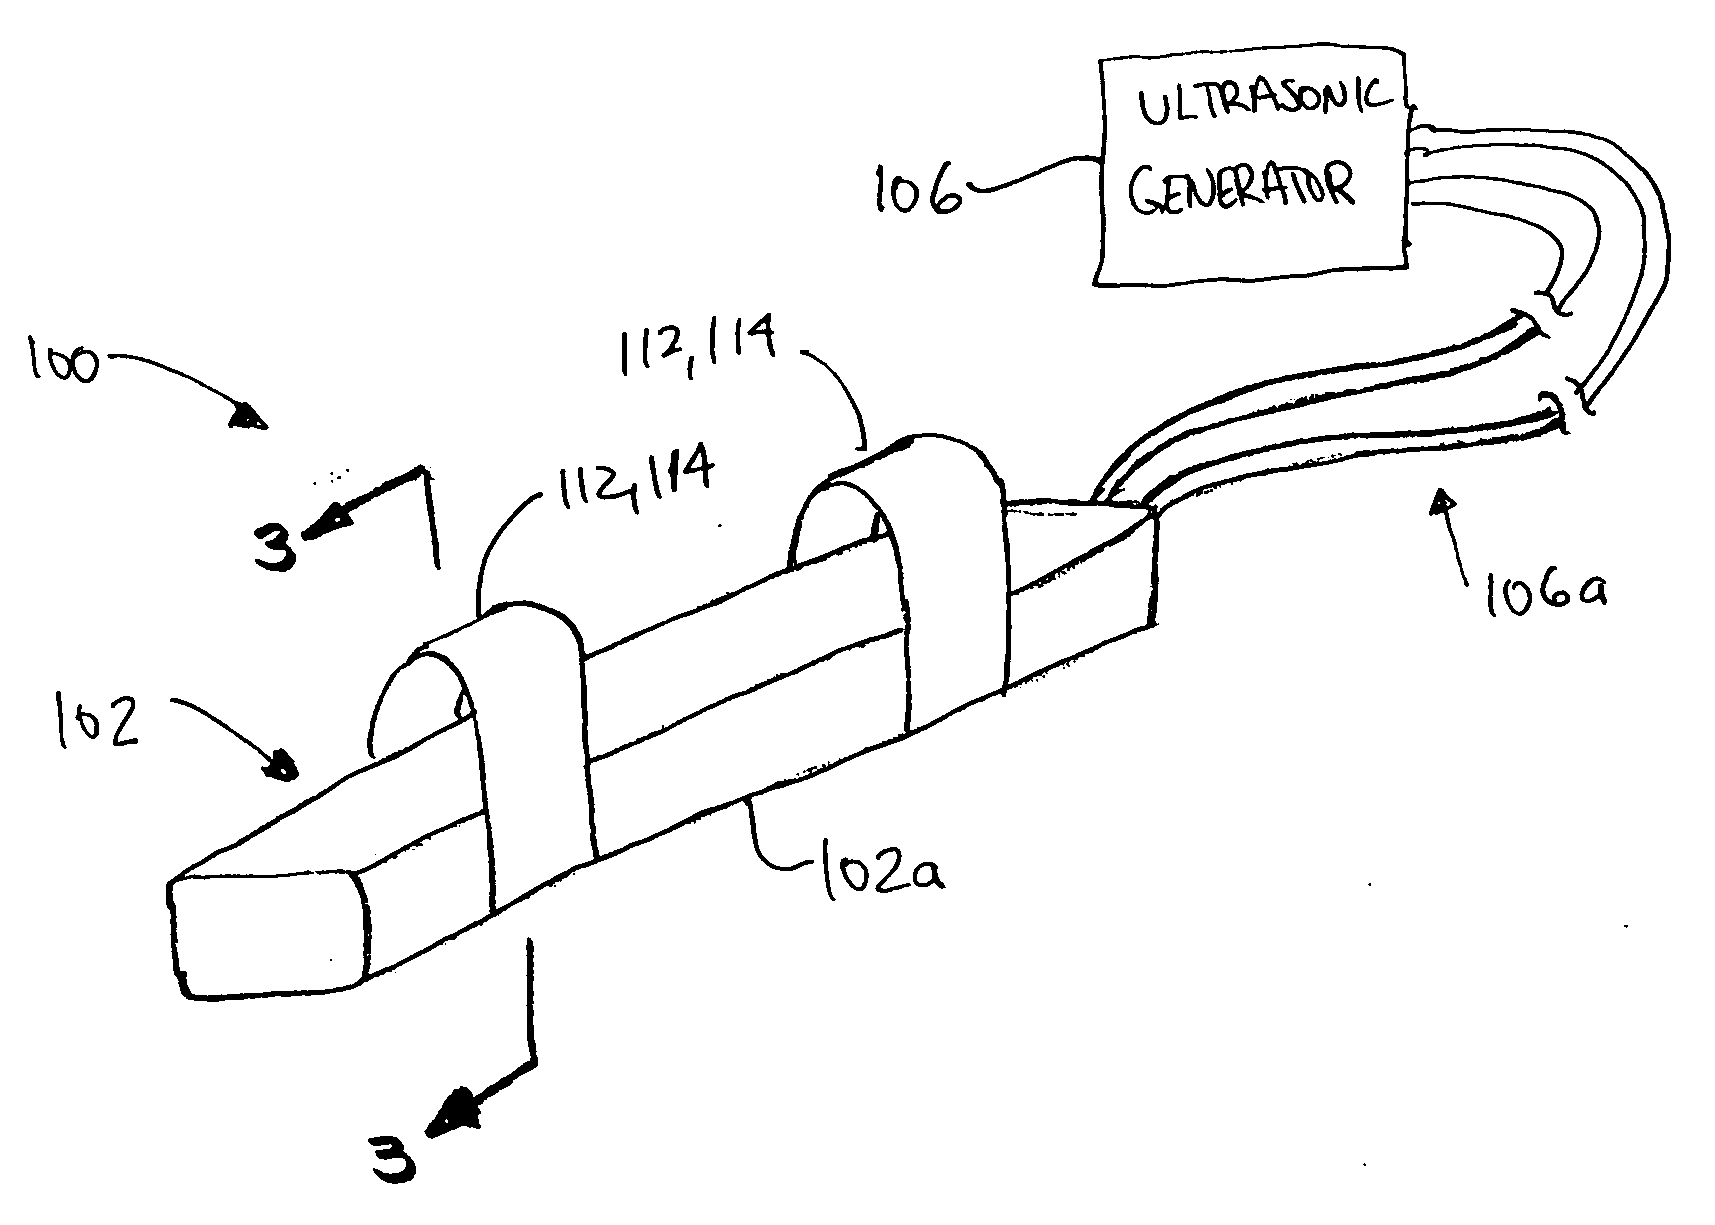 Ultrasonic finger probe